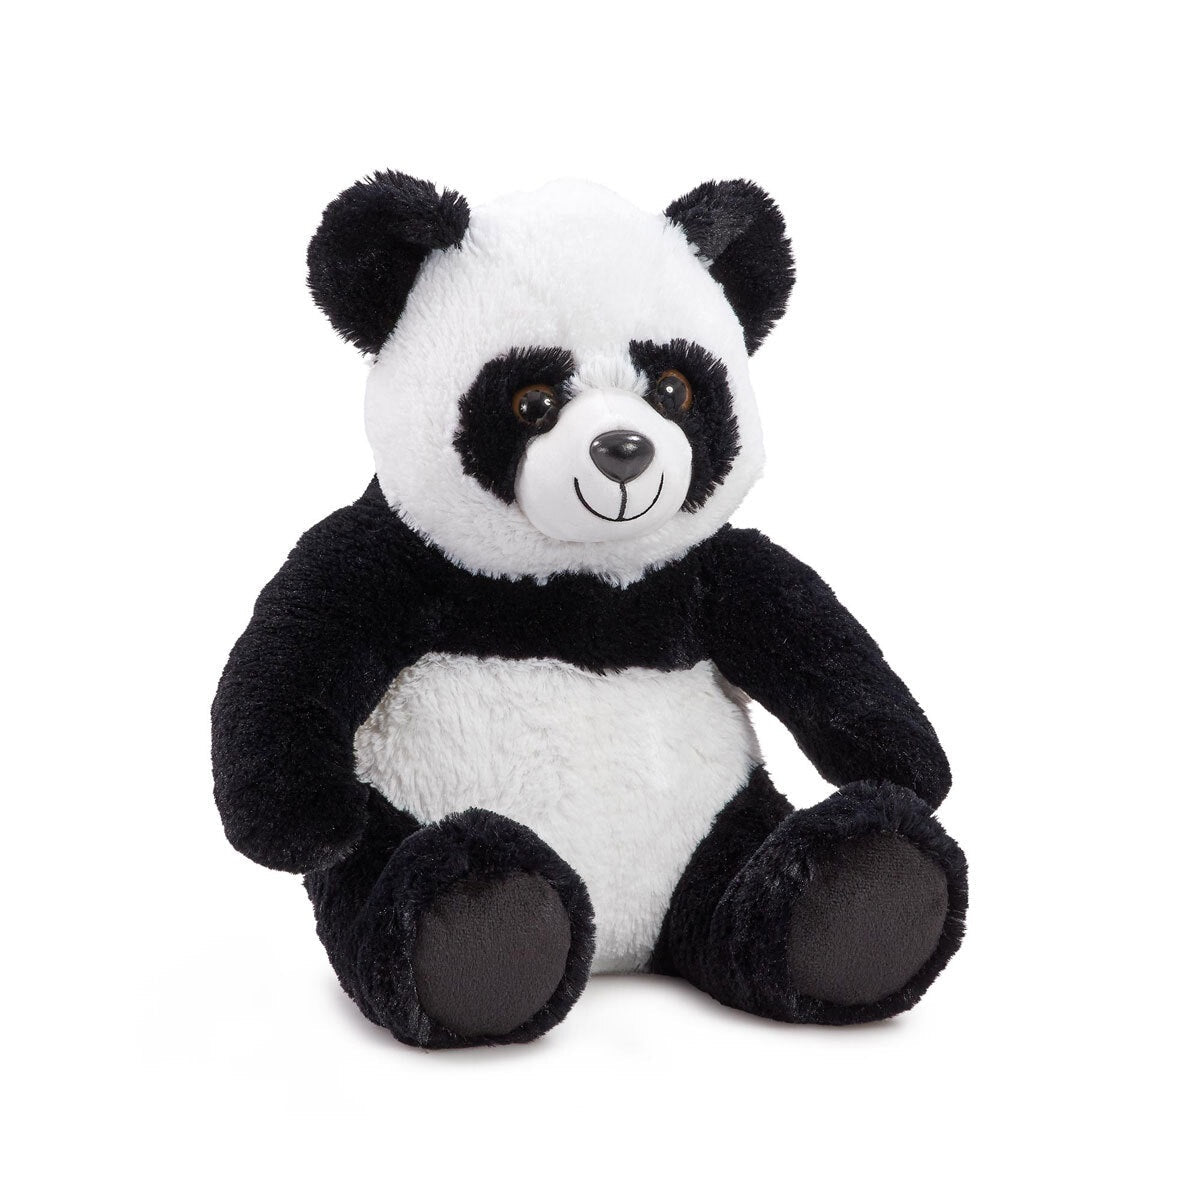 Snuggle Buddies 30cm Endangered Animals Plush Toy - Panda